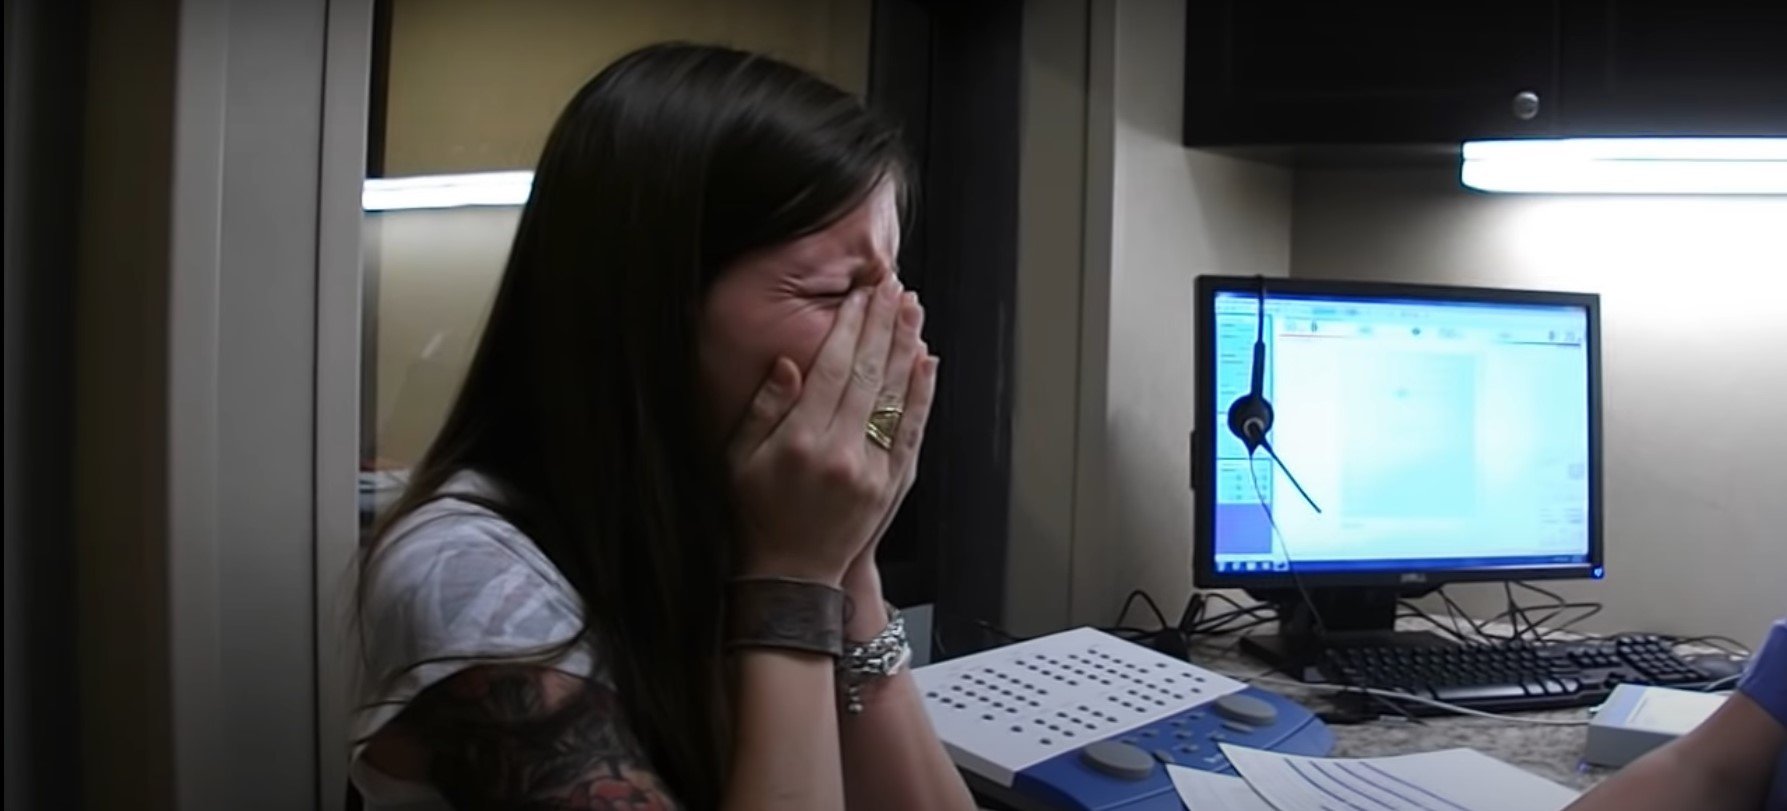 Sarah Churman weinte, als sie ihre Stimme hörte | Quelle: Youtube/Sloan Churman